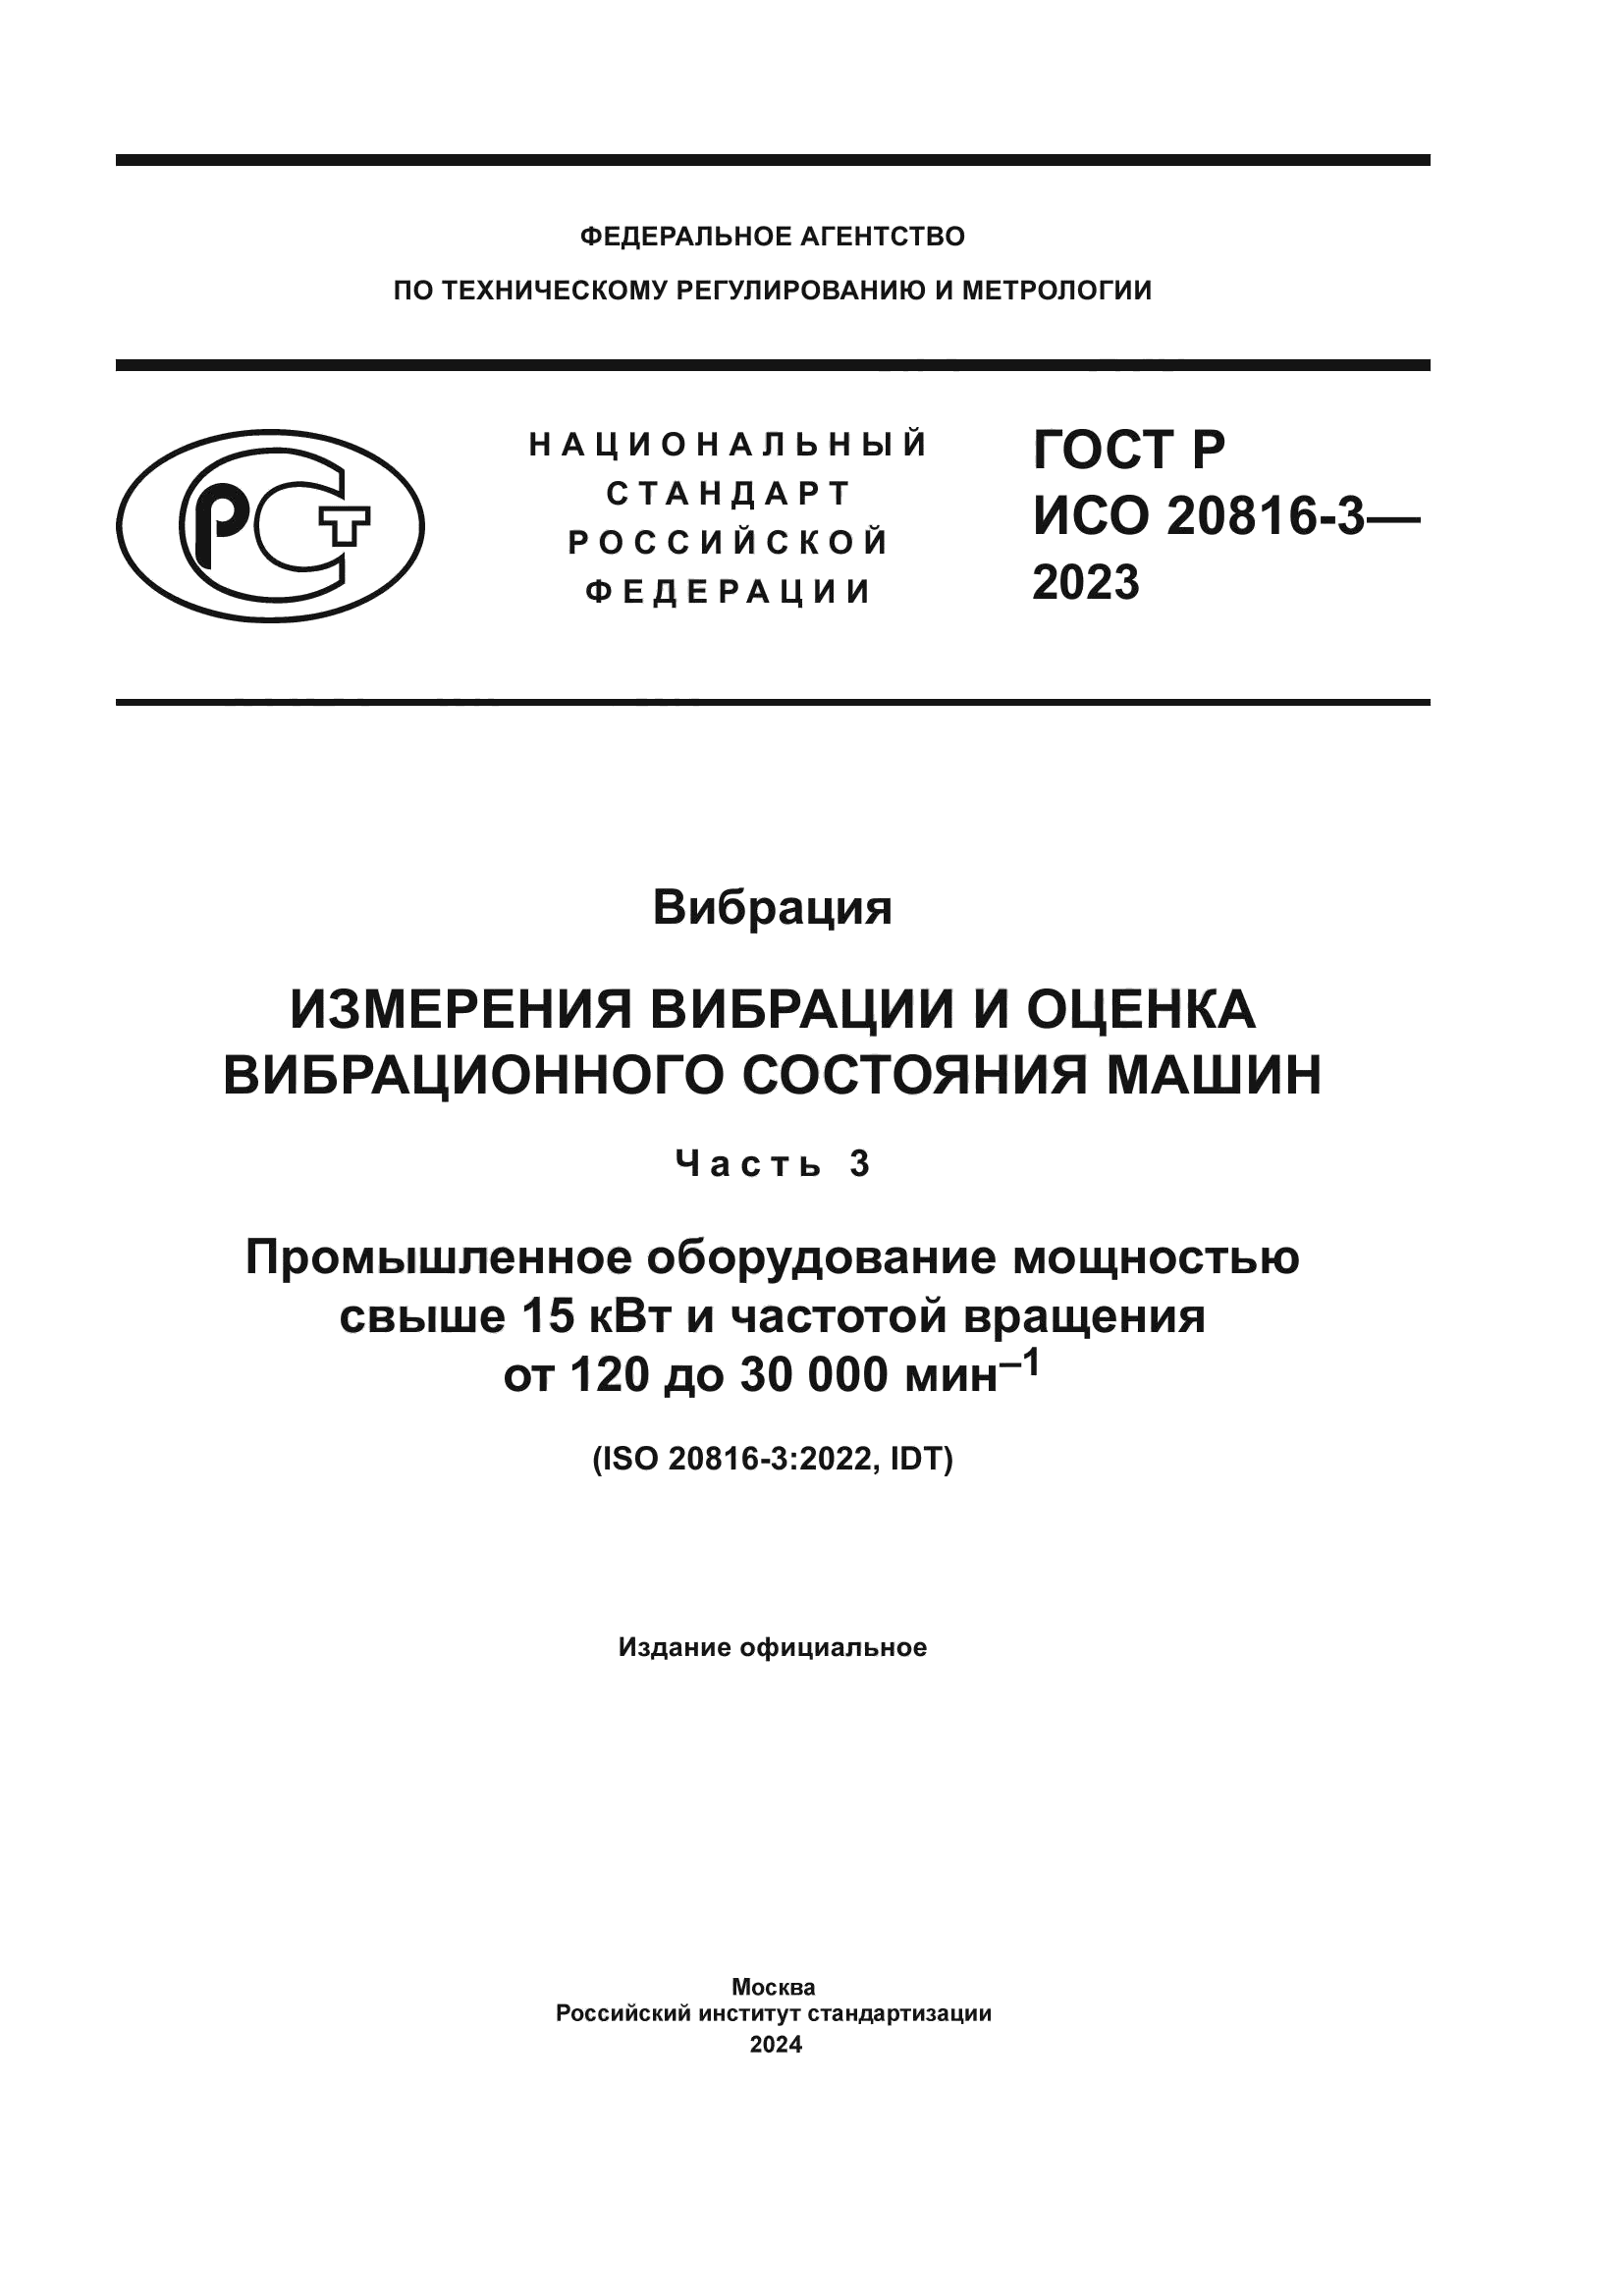 ГОСТ Р ИСО 20816-3-2023